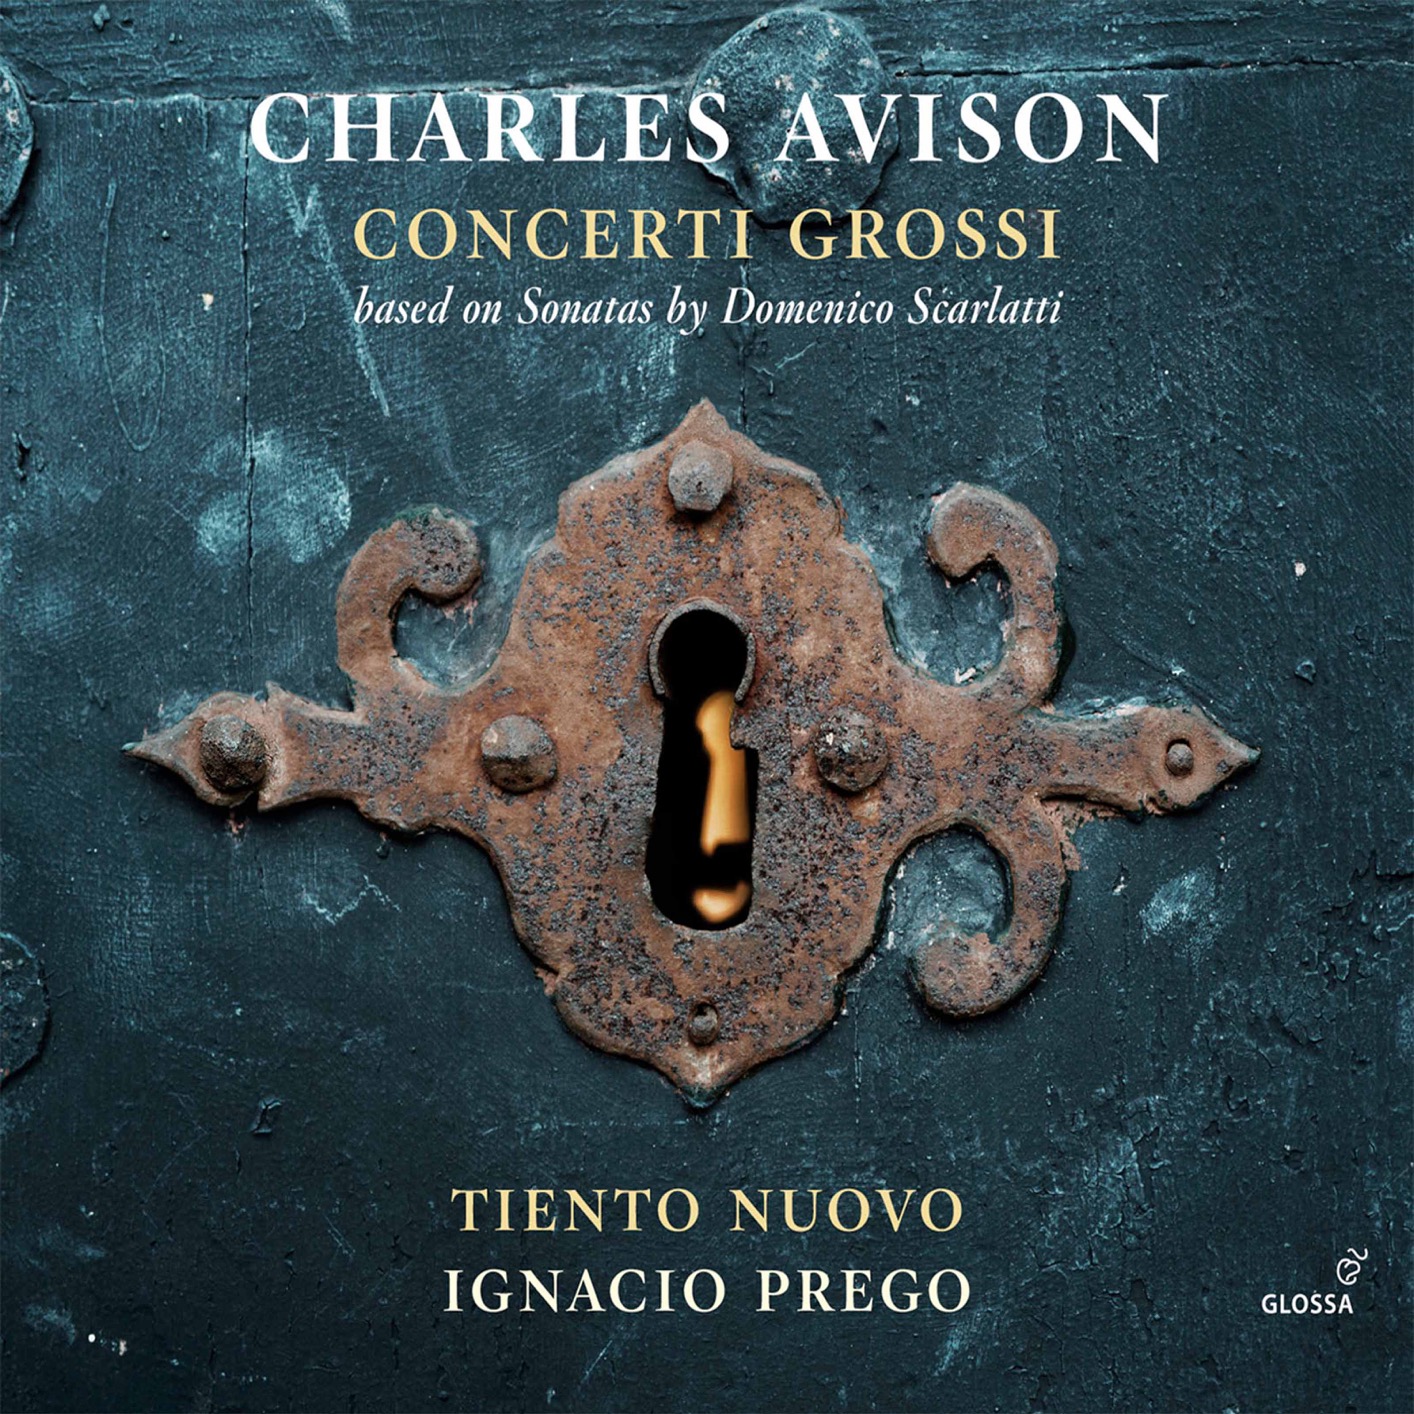 Tiento Nuovo & Ignacio Prego – Avison Concerti grossi (2021) [FLAC 24bit/88,2kHz]